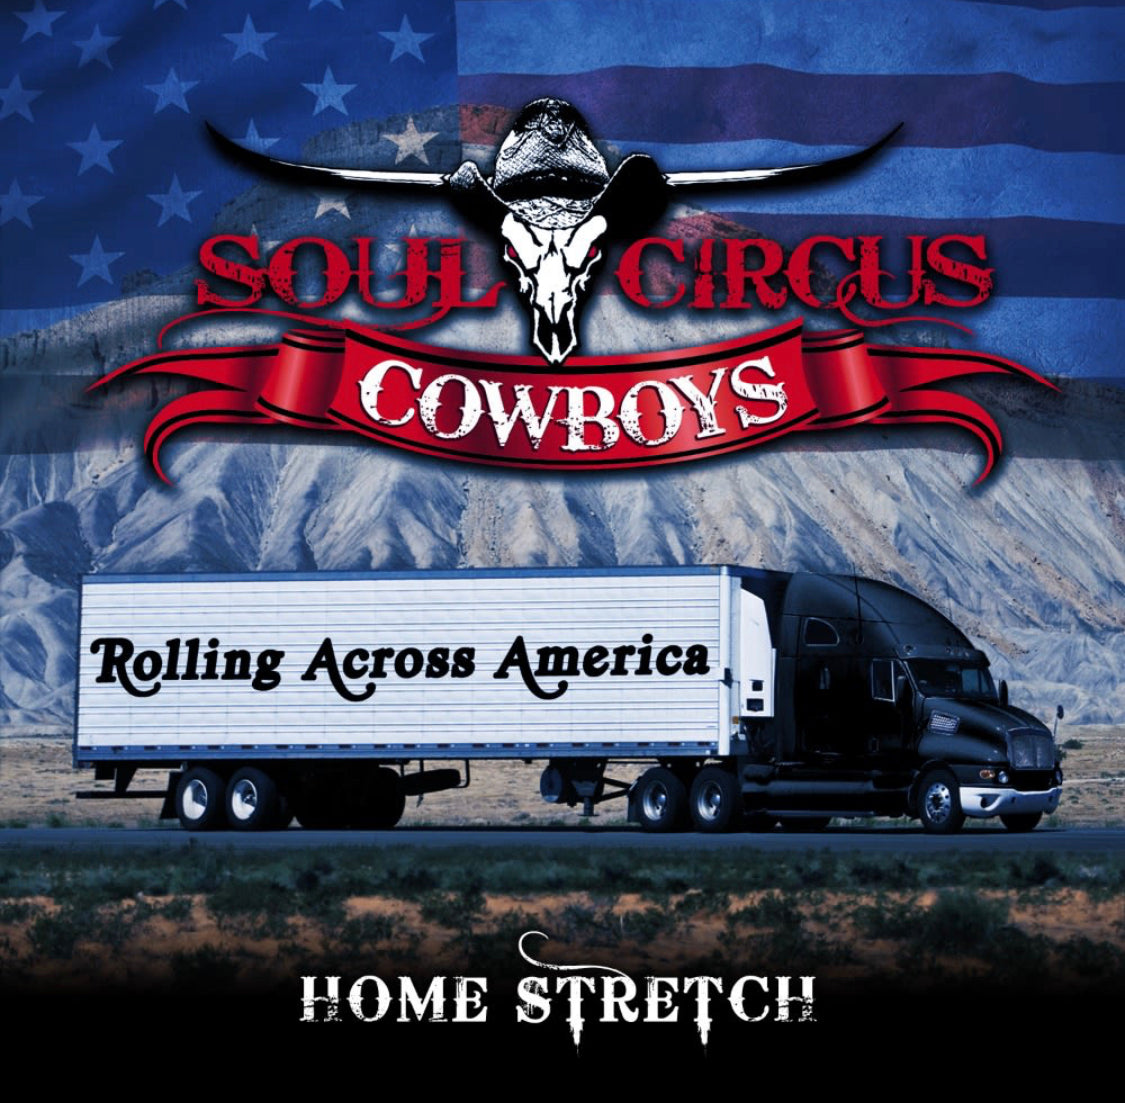 Soul Circus Cowboys - "Rolling Across America" Digital Album